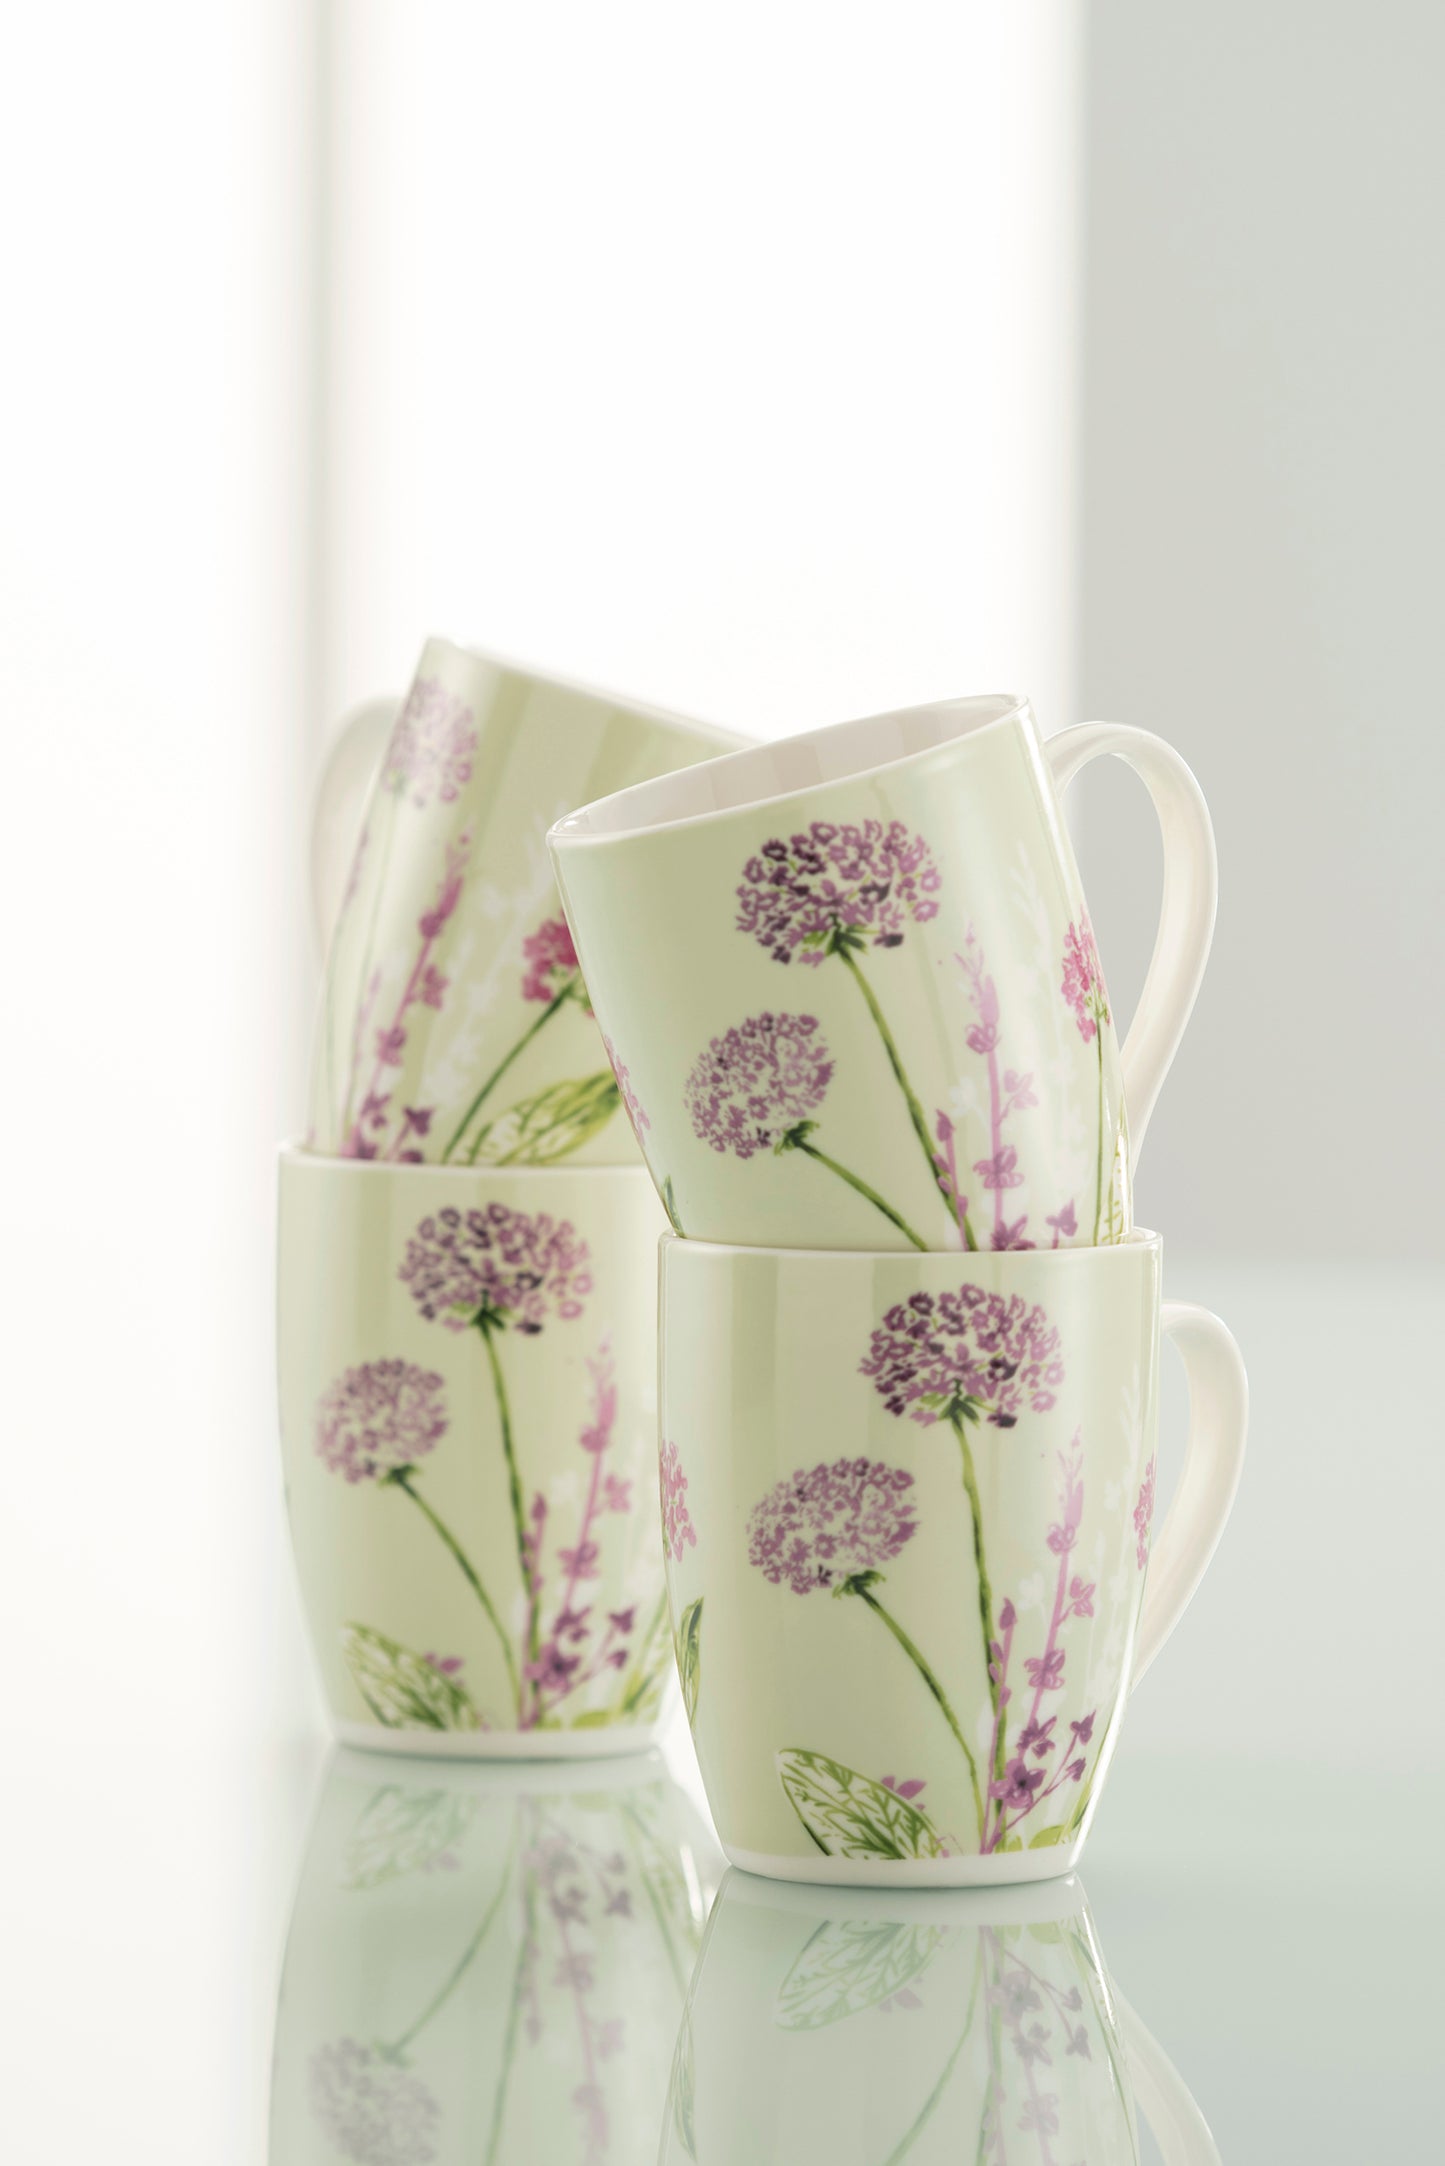 Aynsley Floral Spree 4 Mugs Set